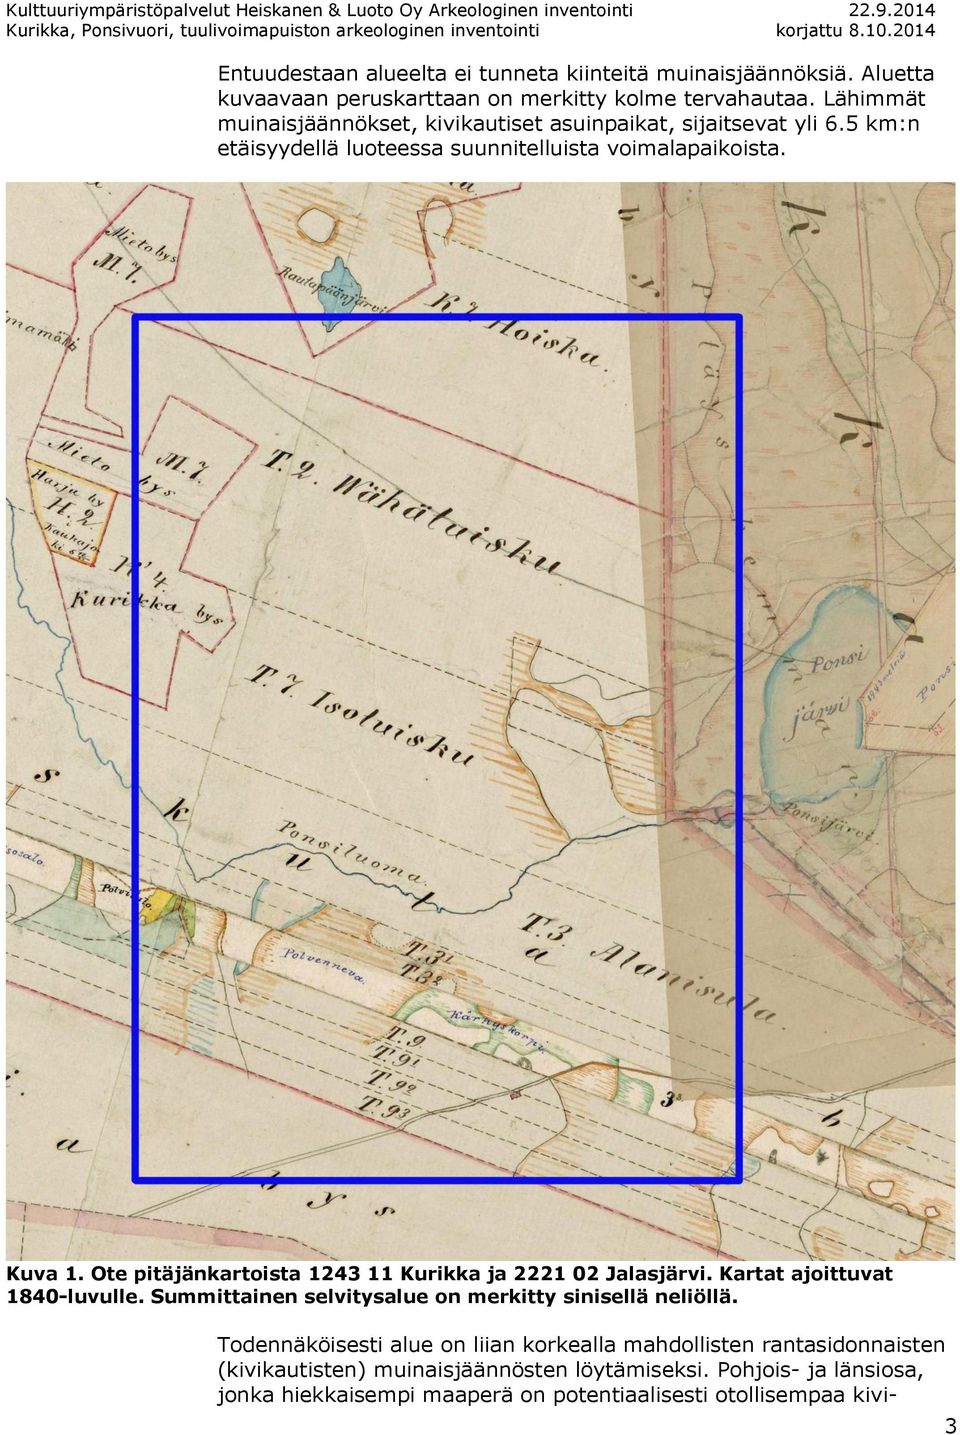 Ote pitäjänkartoista 1243 11 Kurikka ja 2221 02 Jalasjärvi. Kartat ajoittuvat 1840-luvulle. Summittainen selvitysalue on merkitty sinisellä neliöllä.